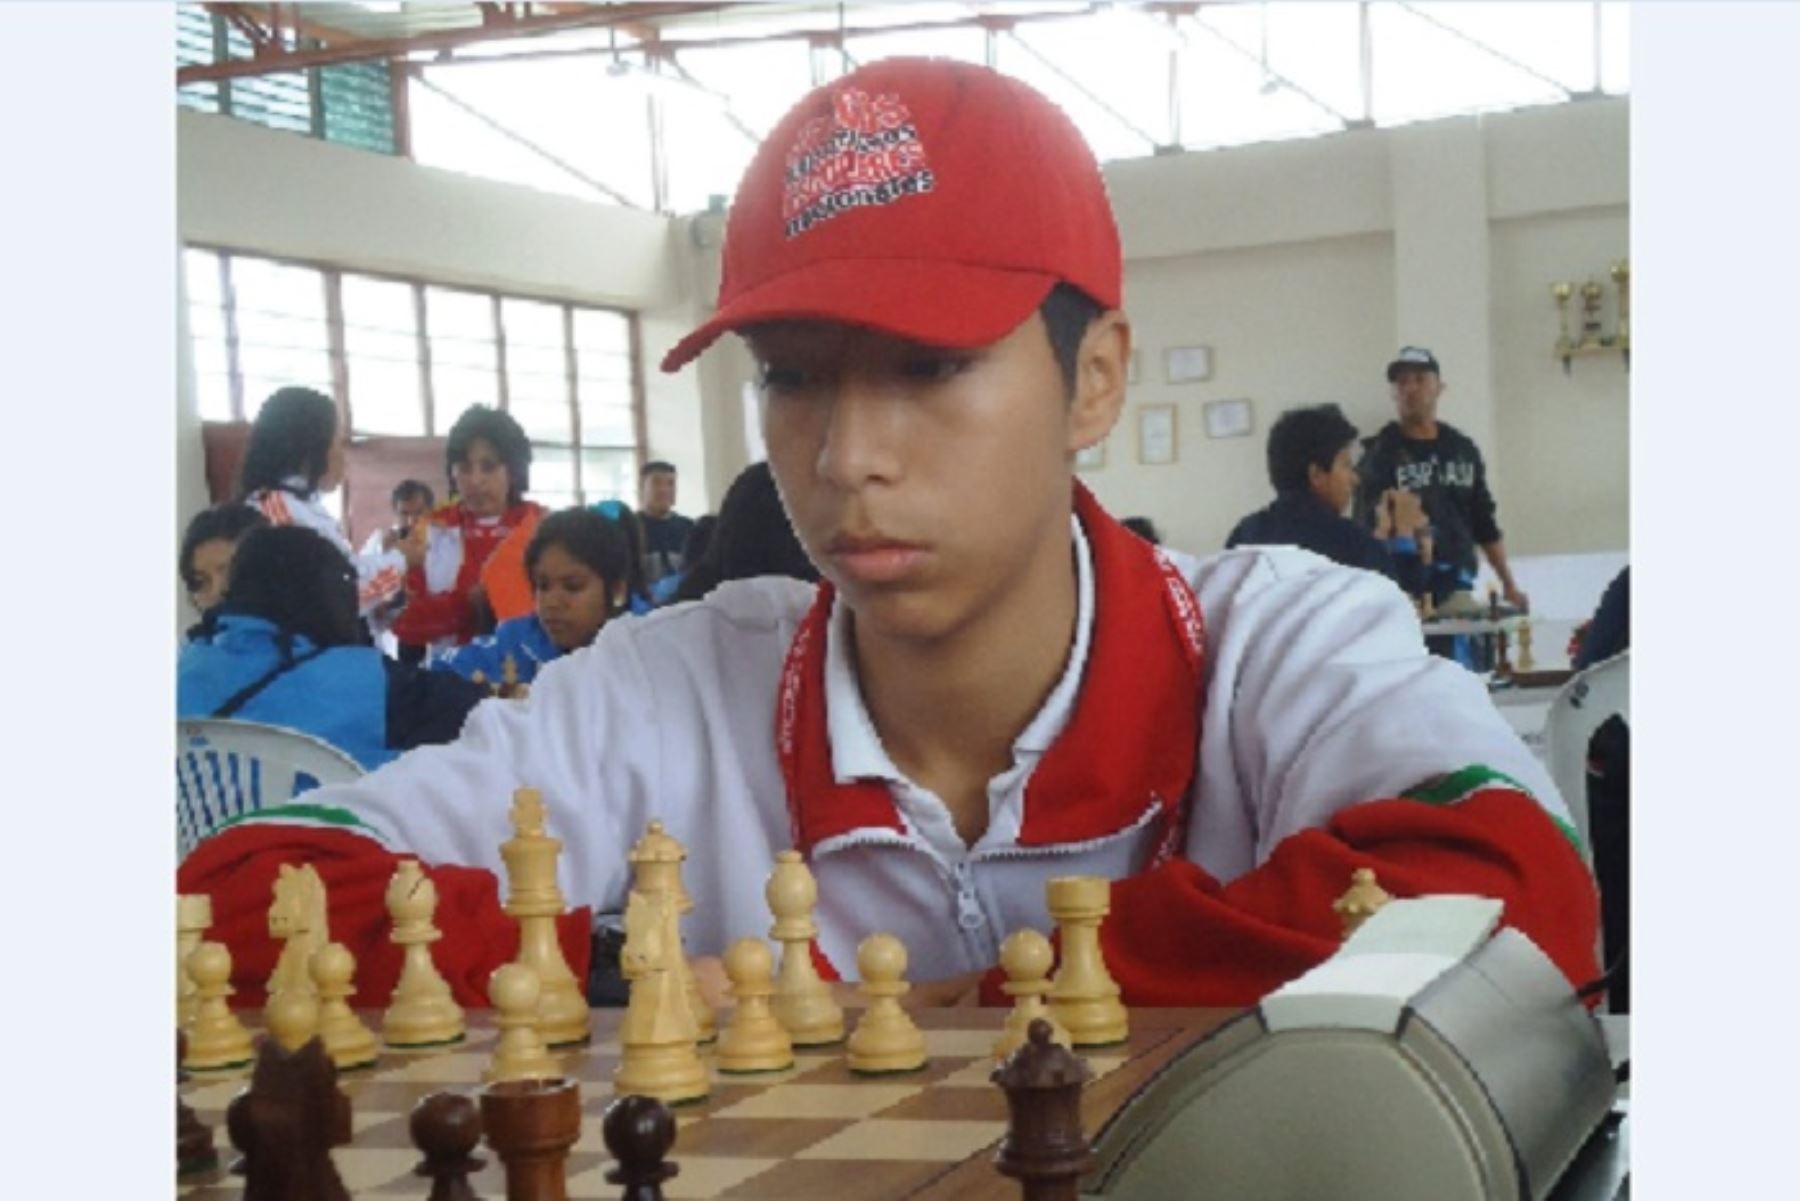 Campeón internacional: "el ajedrez me enseñó a no rendirme y gané una beca Pronabec"